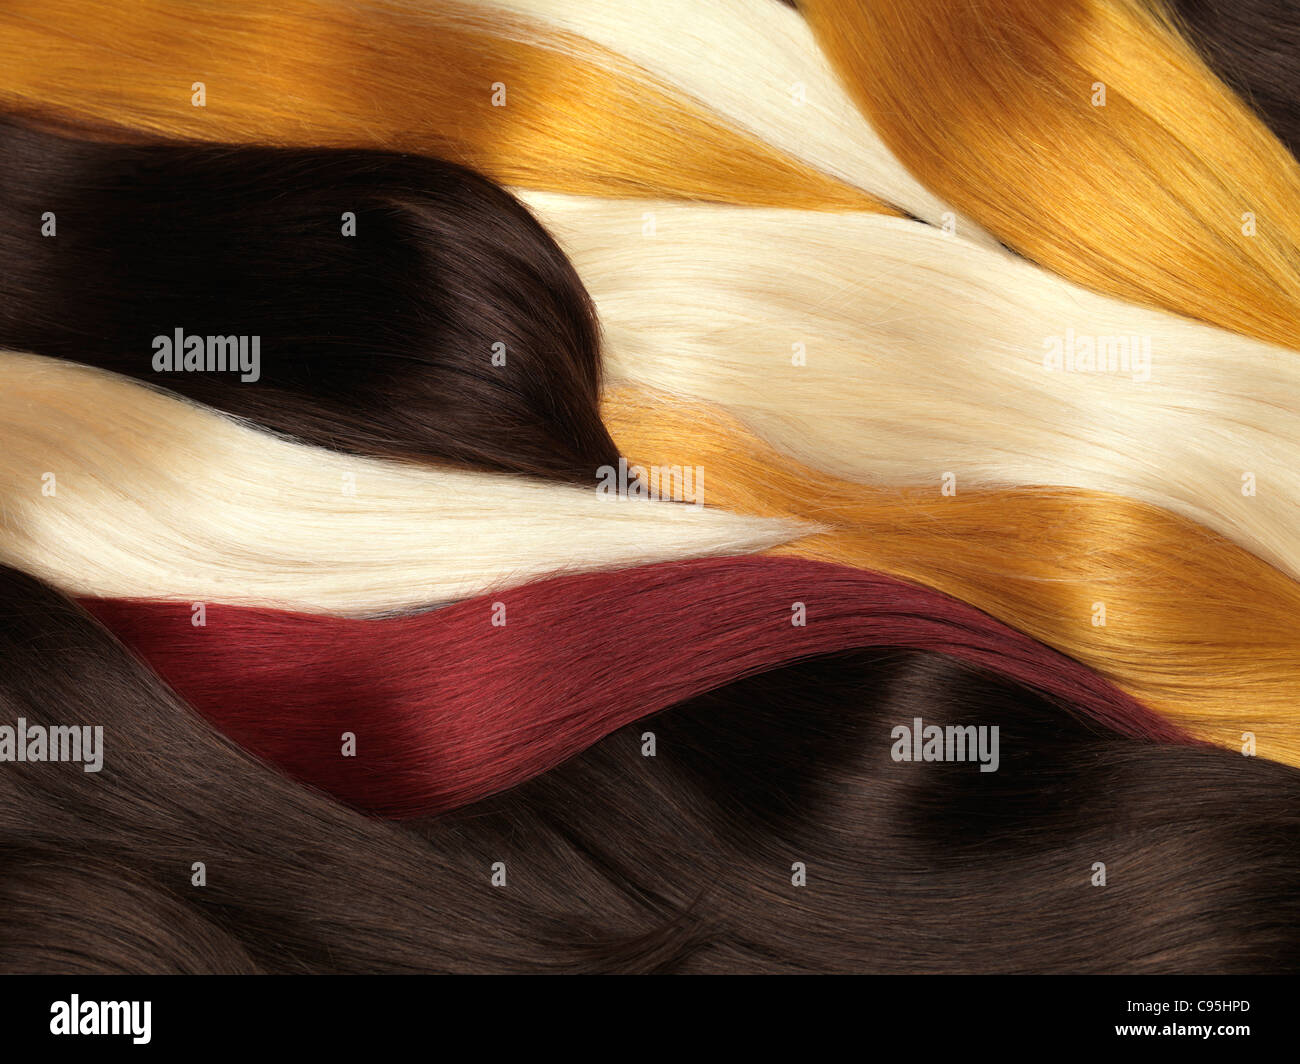 Les prolongements de cheveux humains de différentes couleurs Banque D'Images